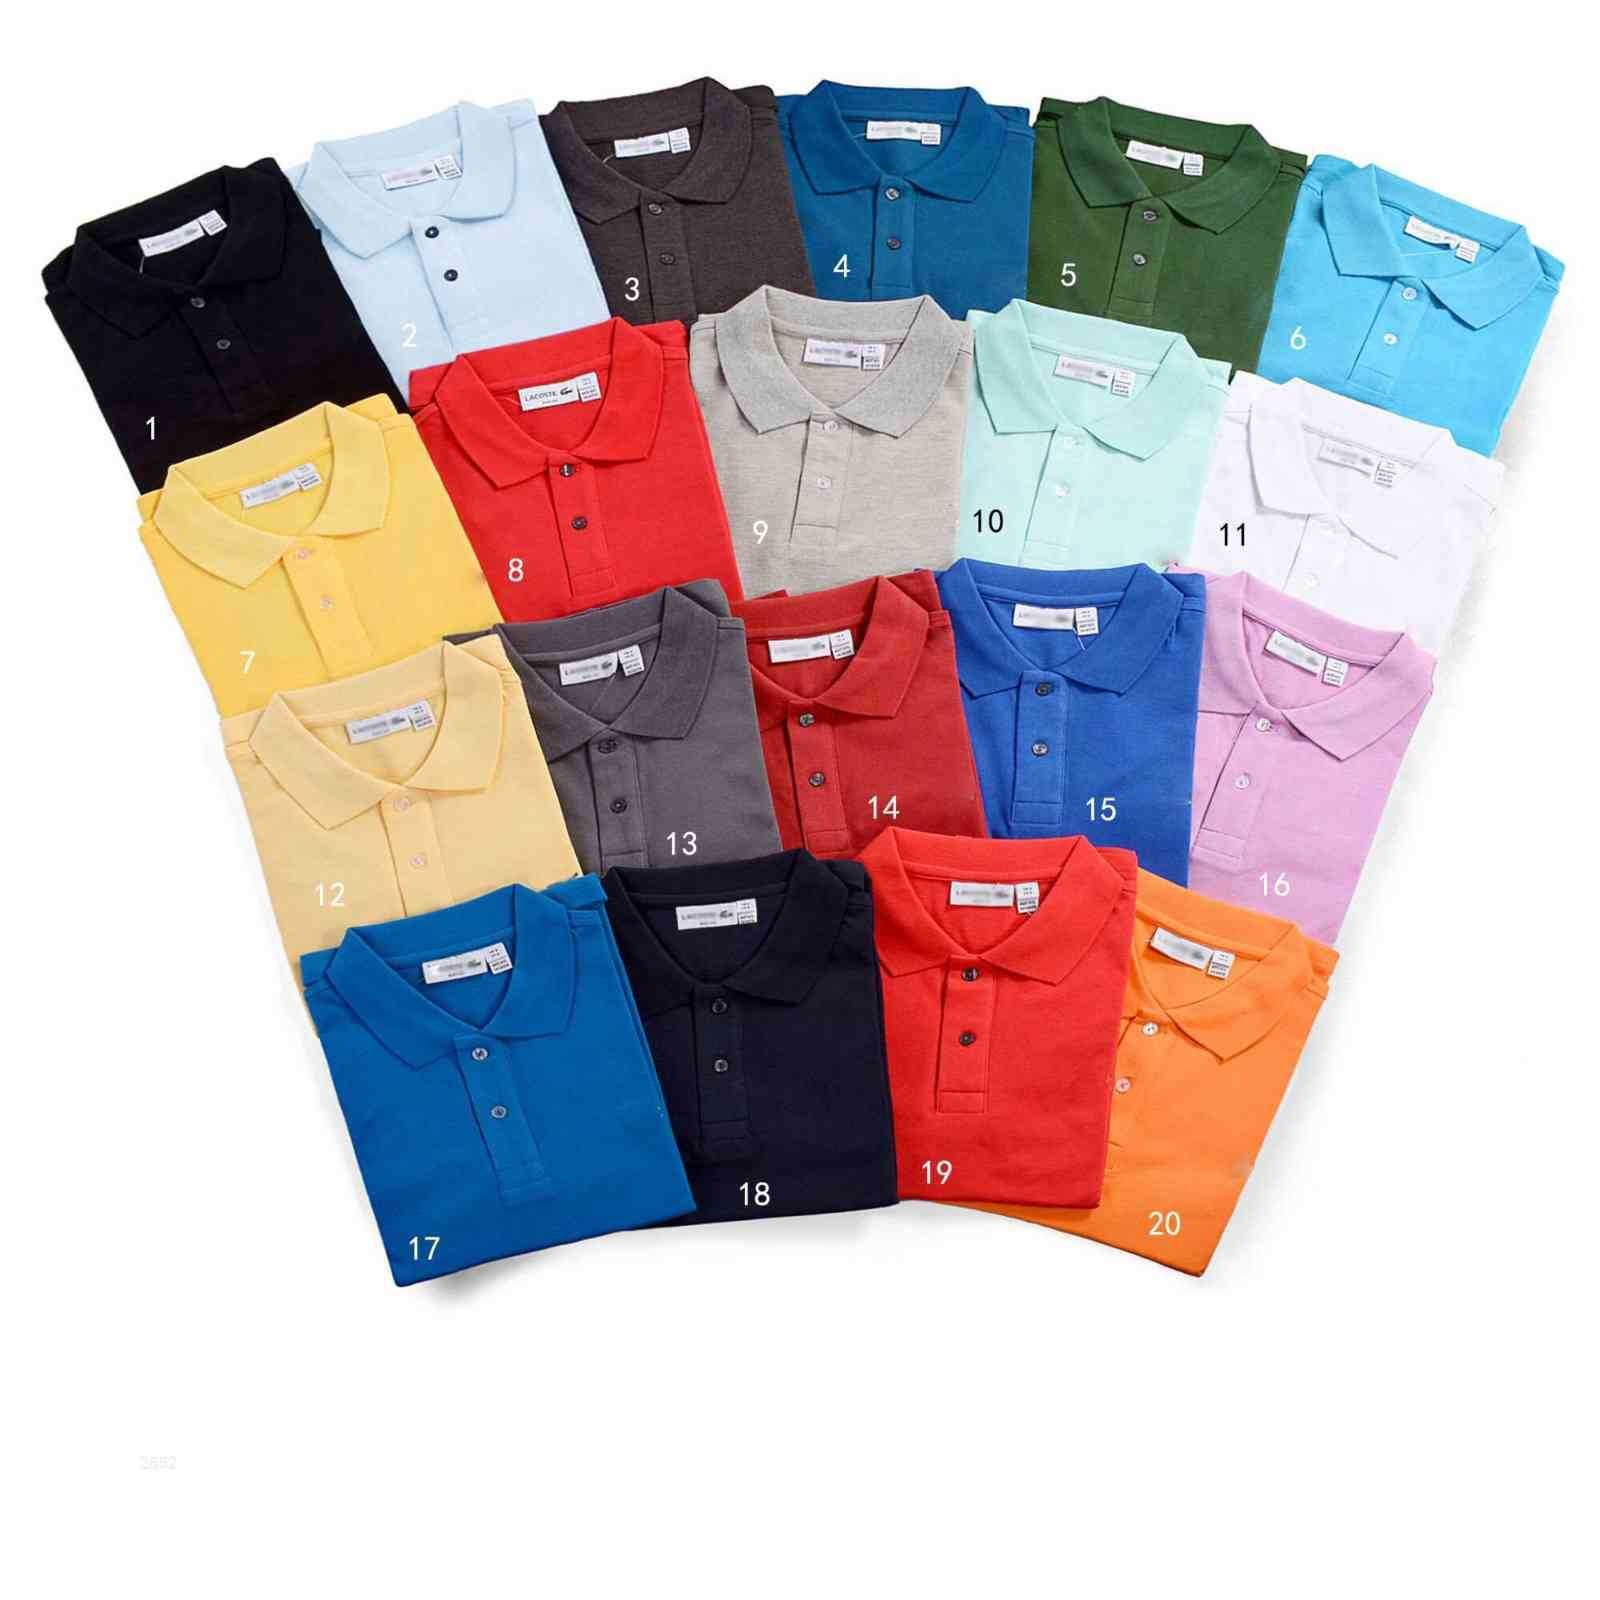 Erkek Tasarımcı Polo Gömlek Erkekler Marka Moda Lüks Erkek S Tasarımcısı Klasik Polo Gömlek Yayın Hommes Sale P1 Yeni Arrivallll